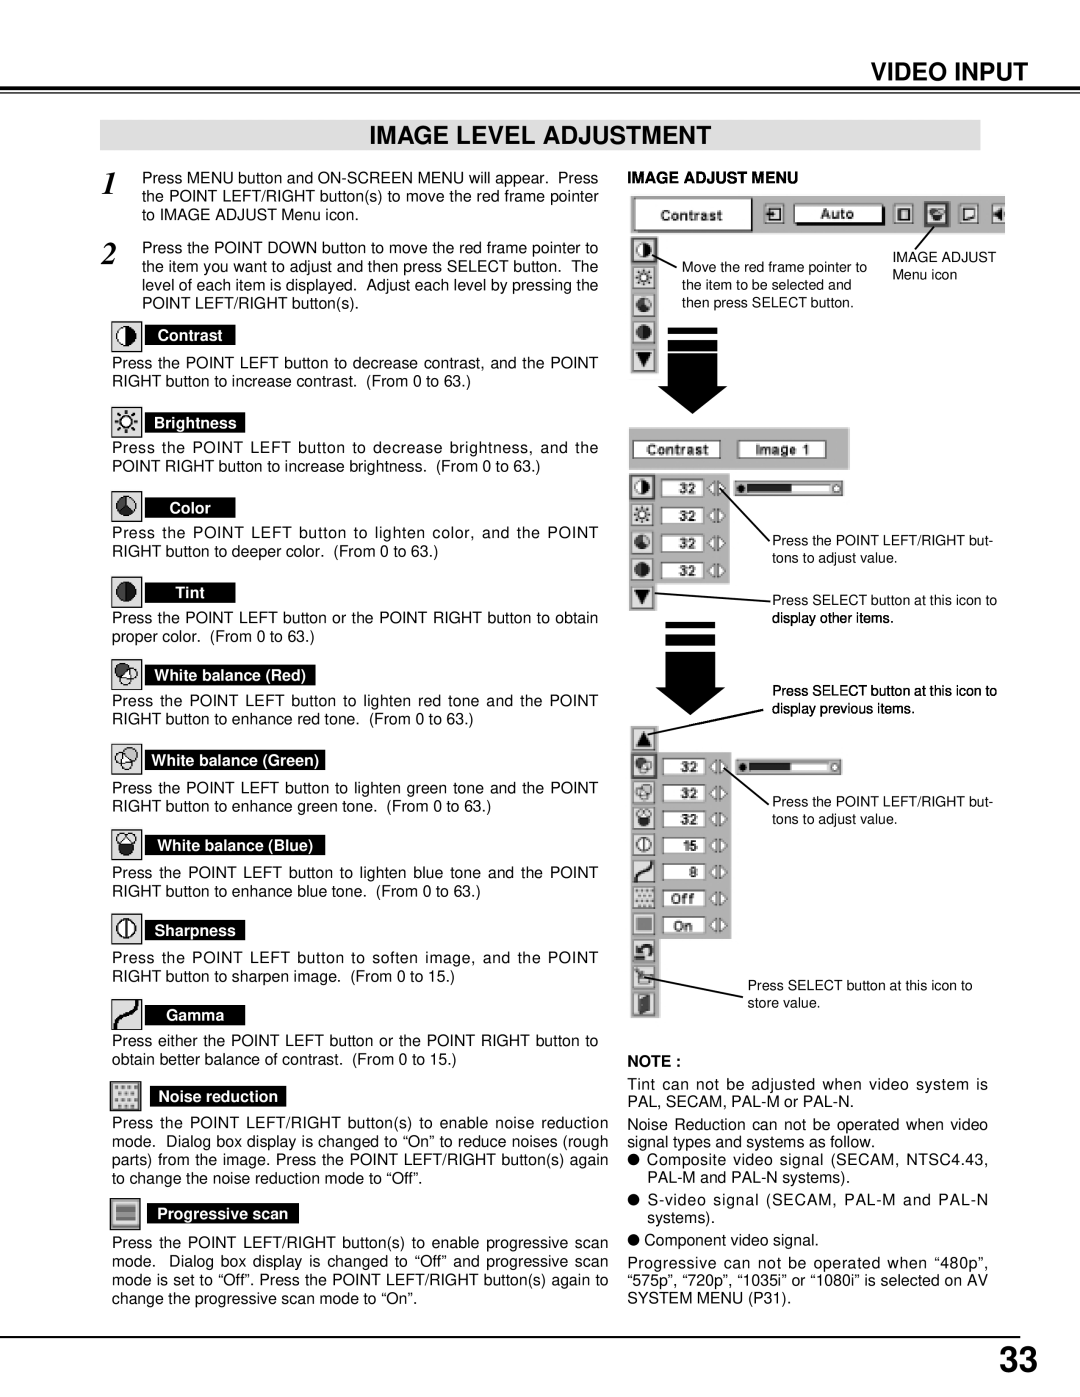 Christie Digital Systems 38-VIV205-01 user manual Video Input Image Level Adjustment, Image Adjust Menu 